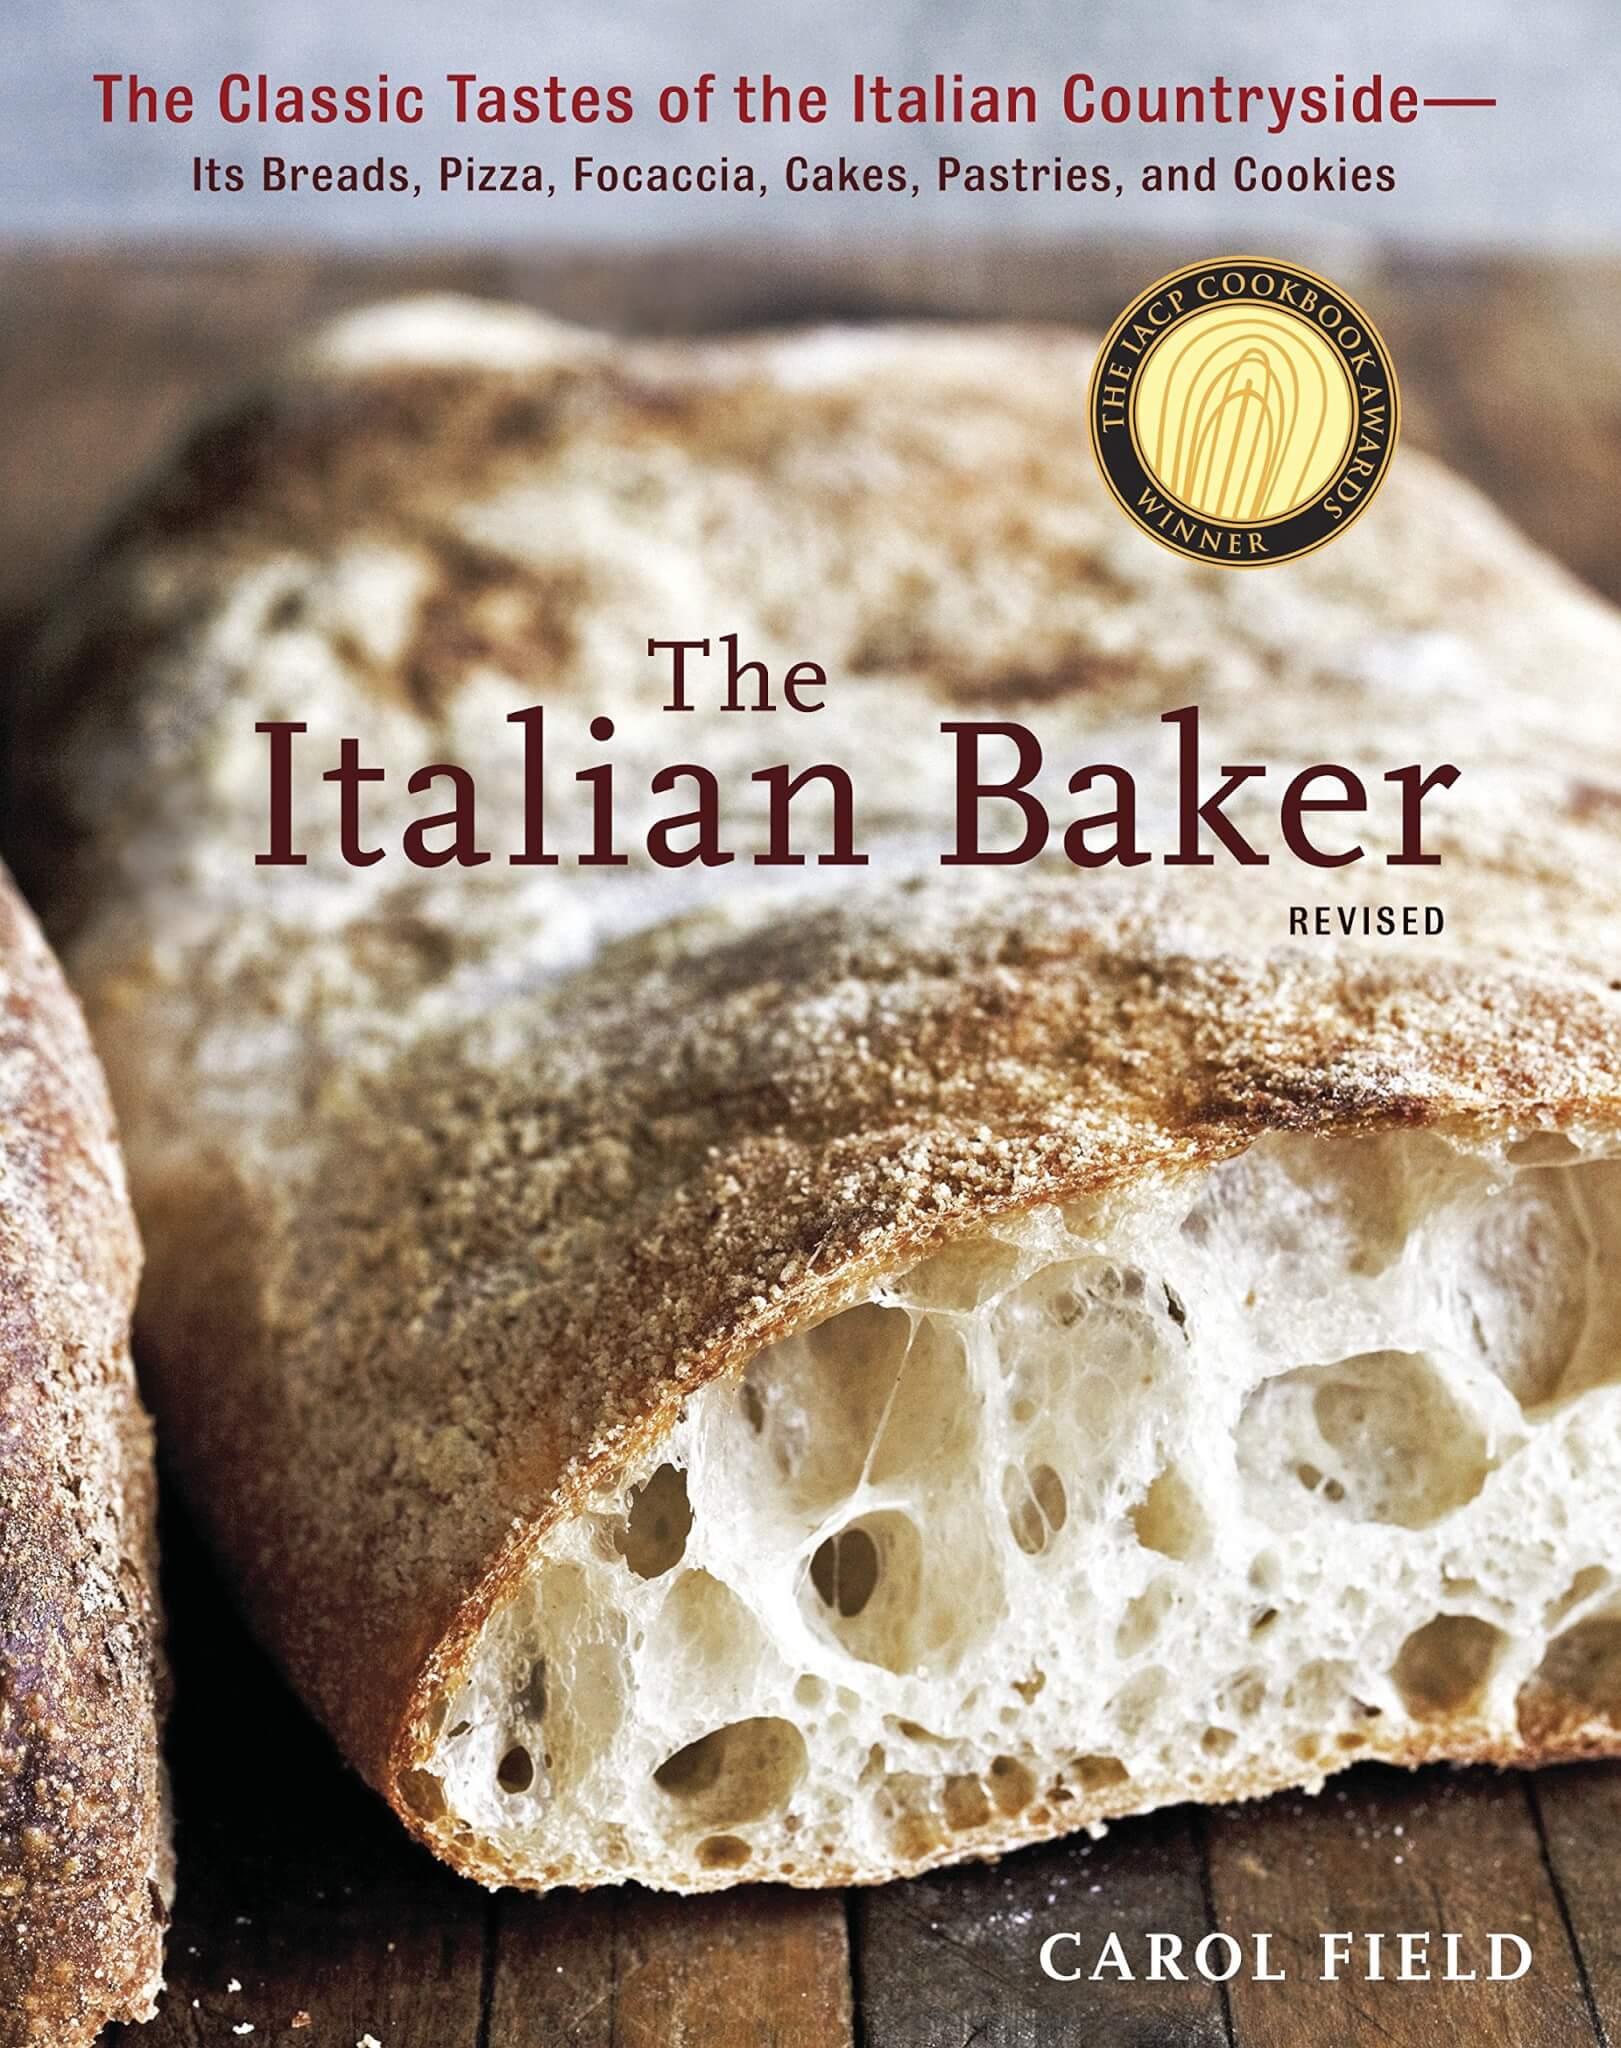 "The Italian Baker" by Carol Field